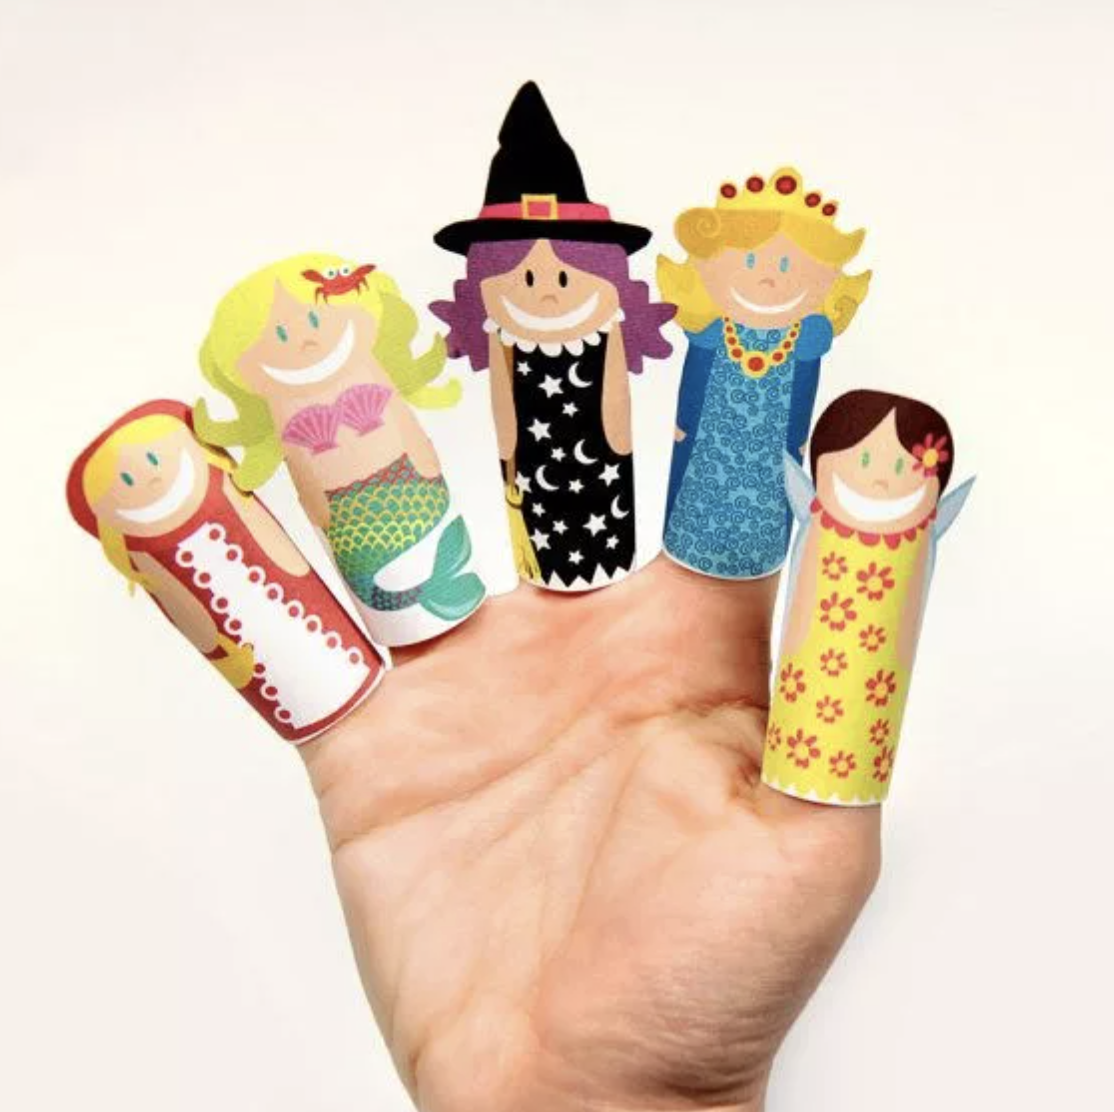 Театр на пальчиках. Пальчиковые куклы. Пальчиковые игрушки для детей. Игрушки на пальчики. Бумажные игрушки на пальцы.